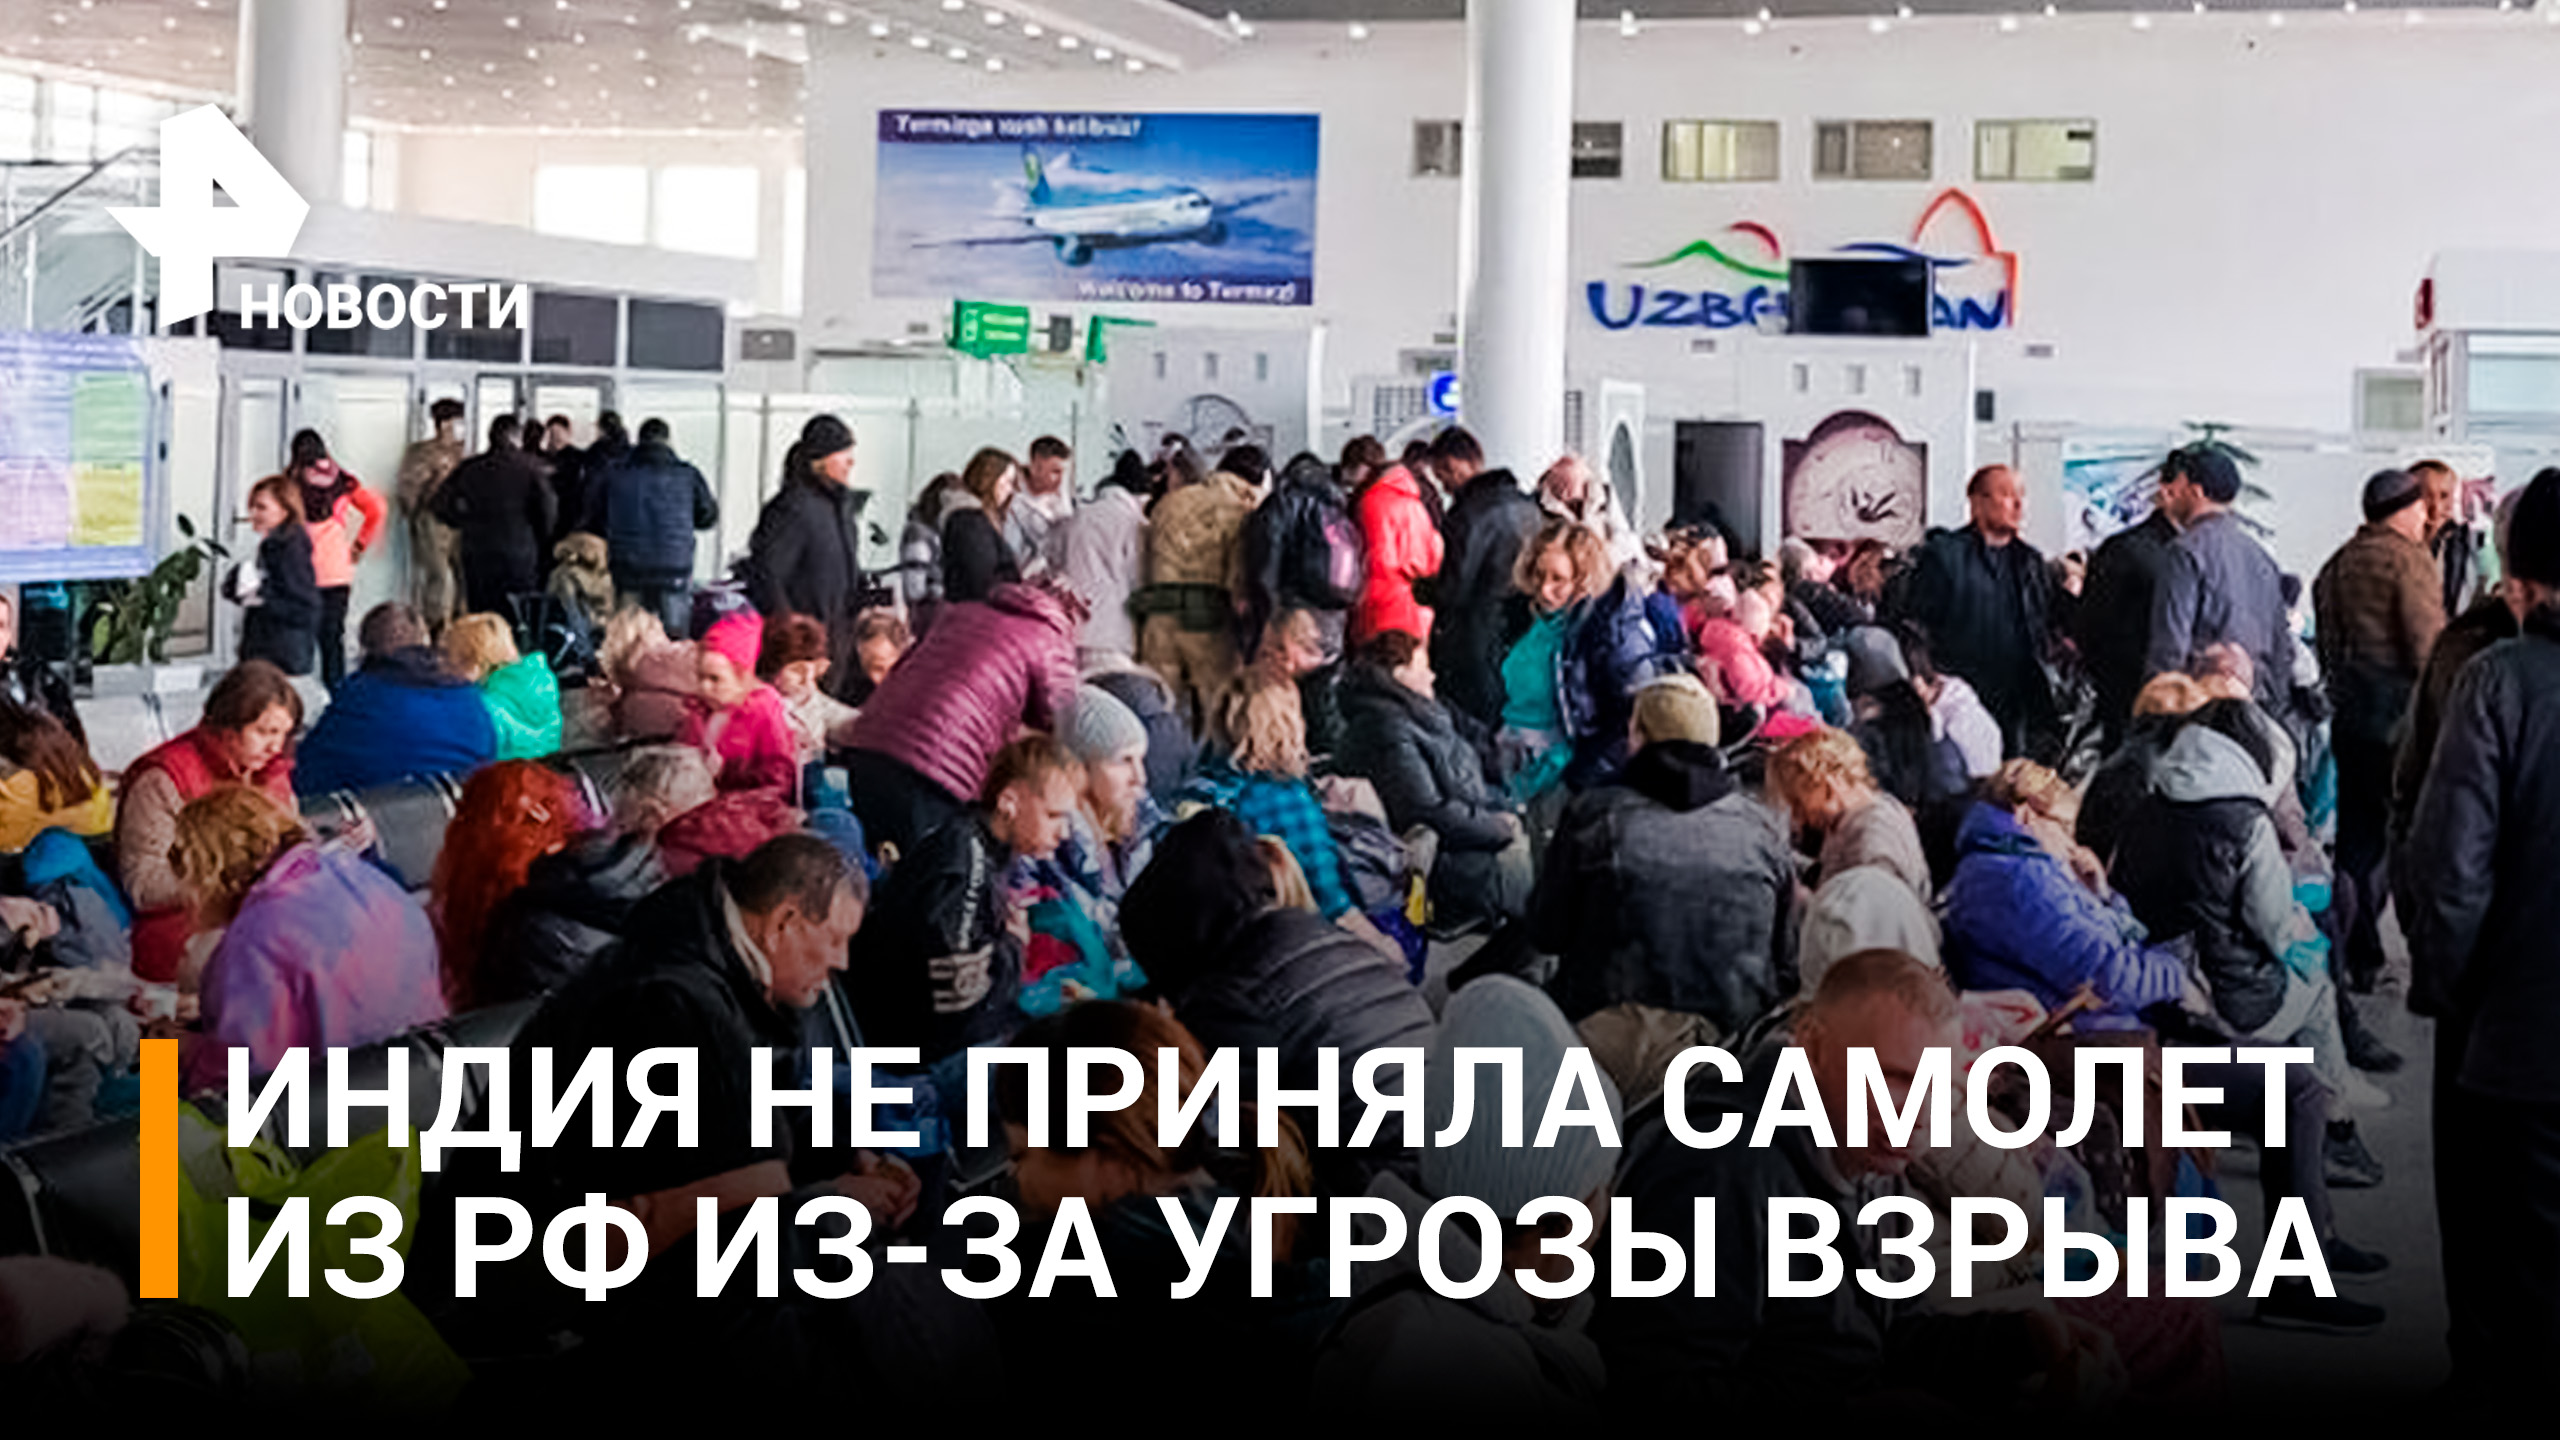 Самолет Пермь – Гоа перенаправили в Узбекистан из-за угрозы взрыва / РЕН Новости